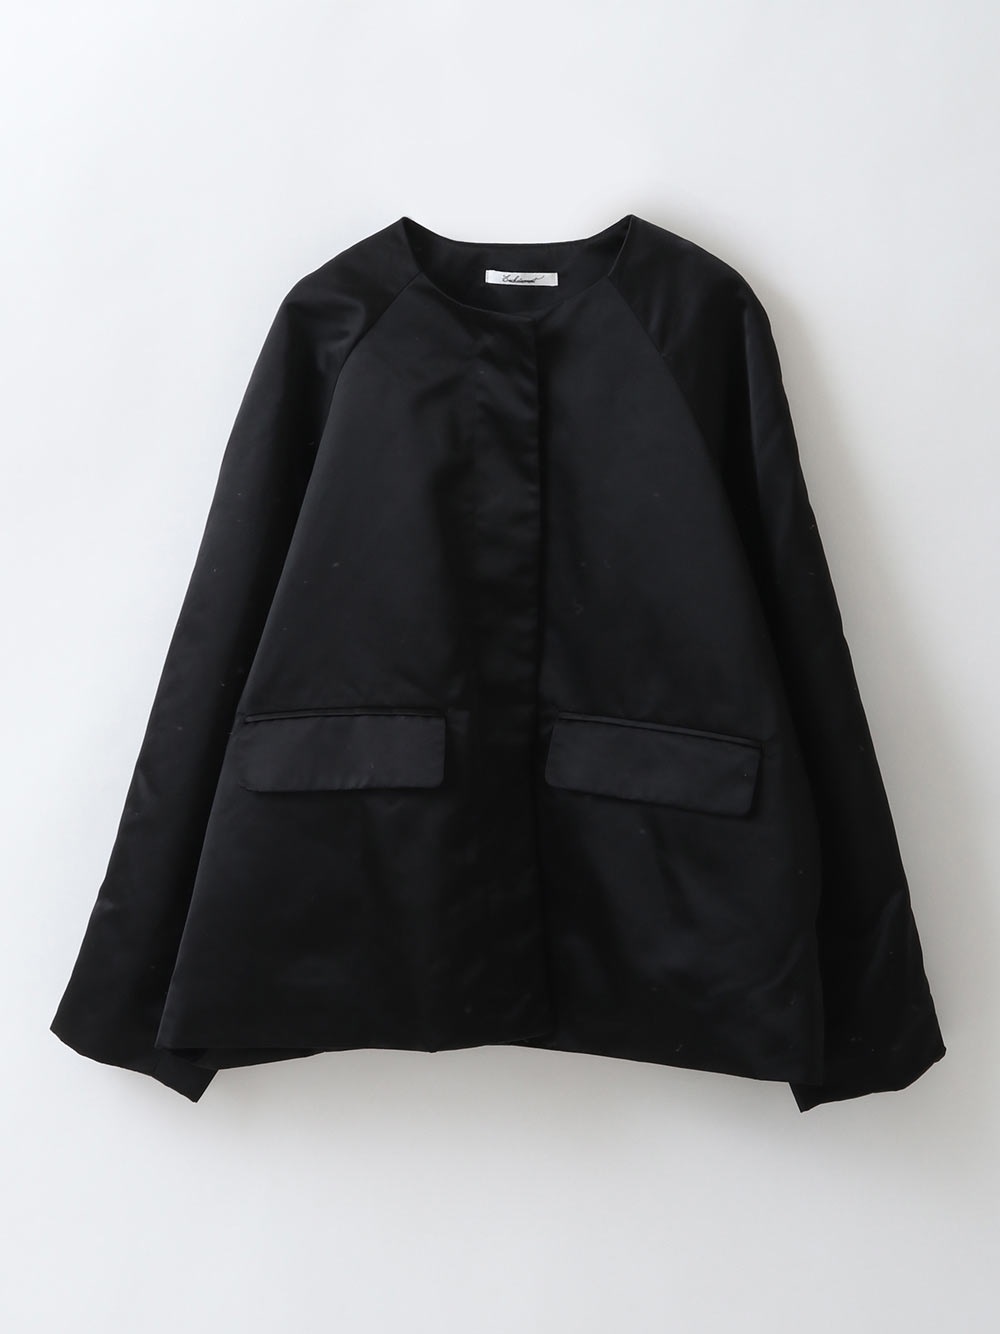 Satin Short Jacket(00ブラック-フリー)